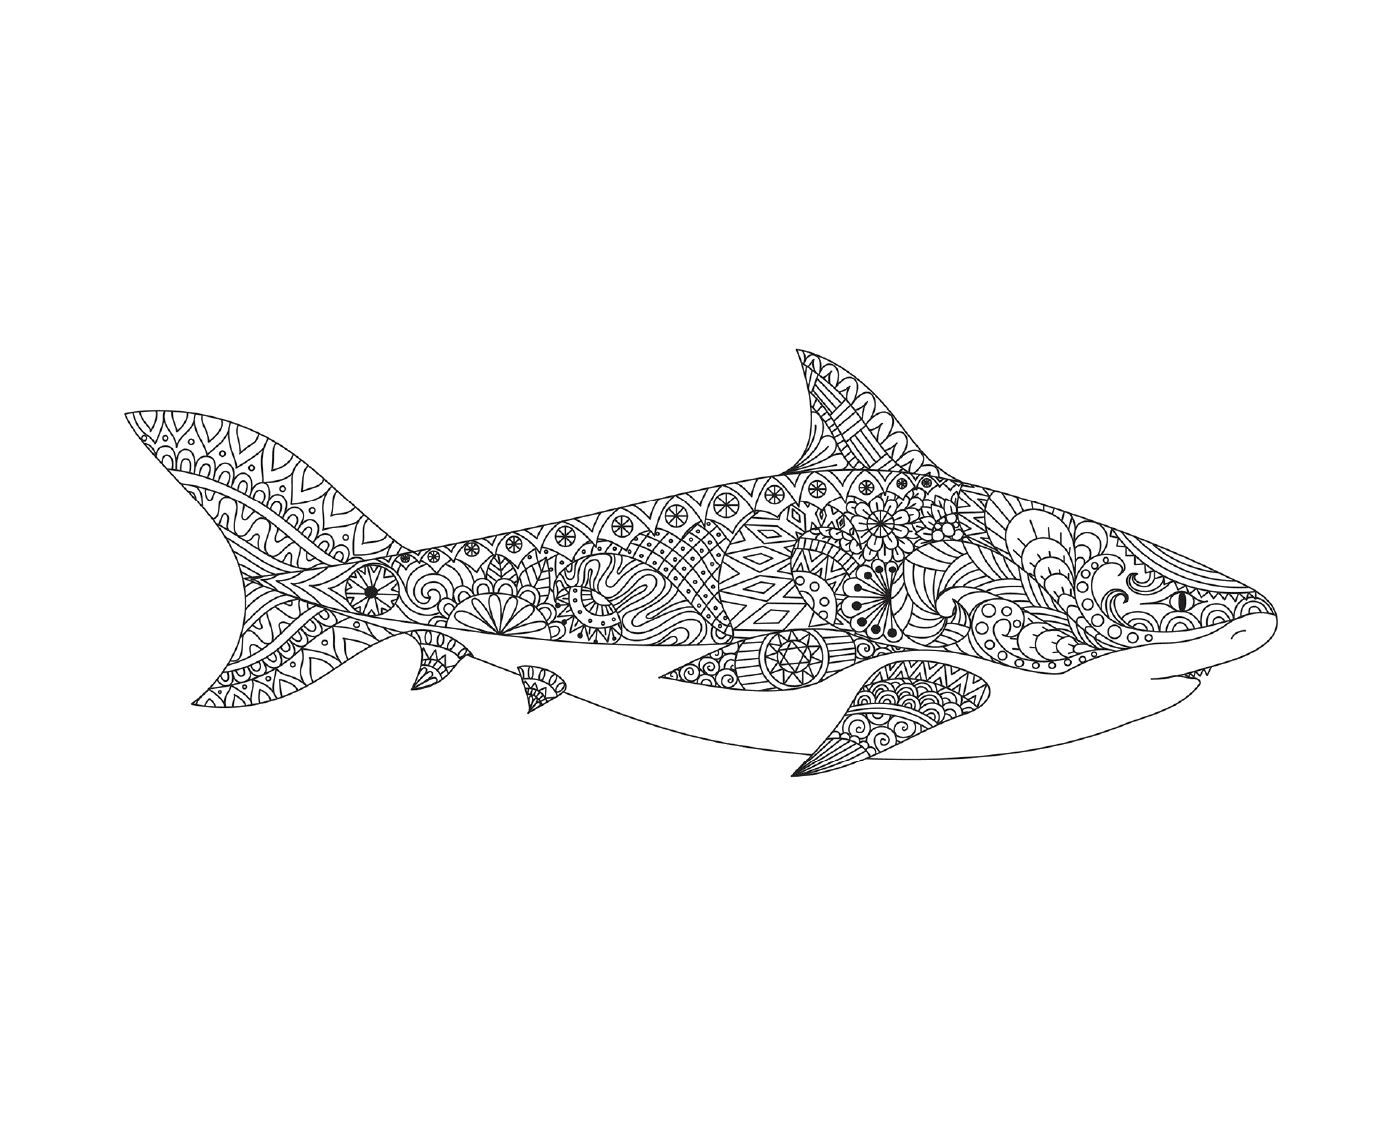  Shark mandala by Bimbimkha 